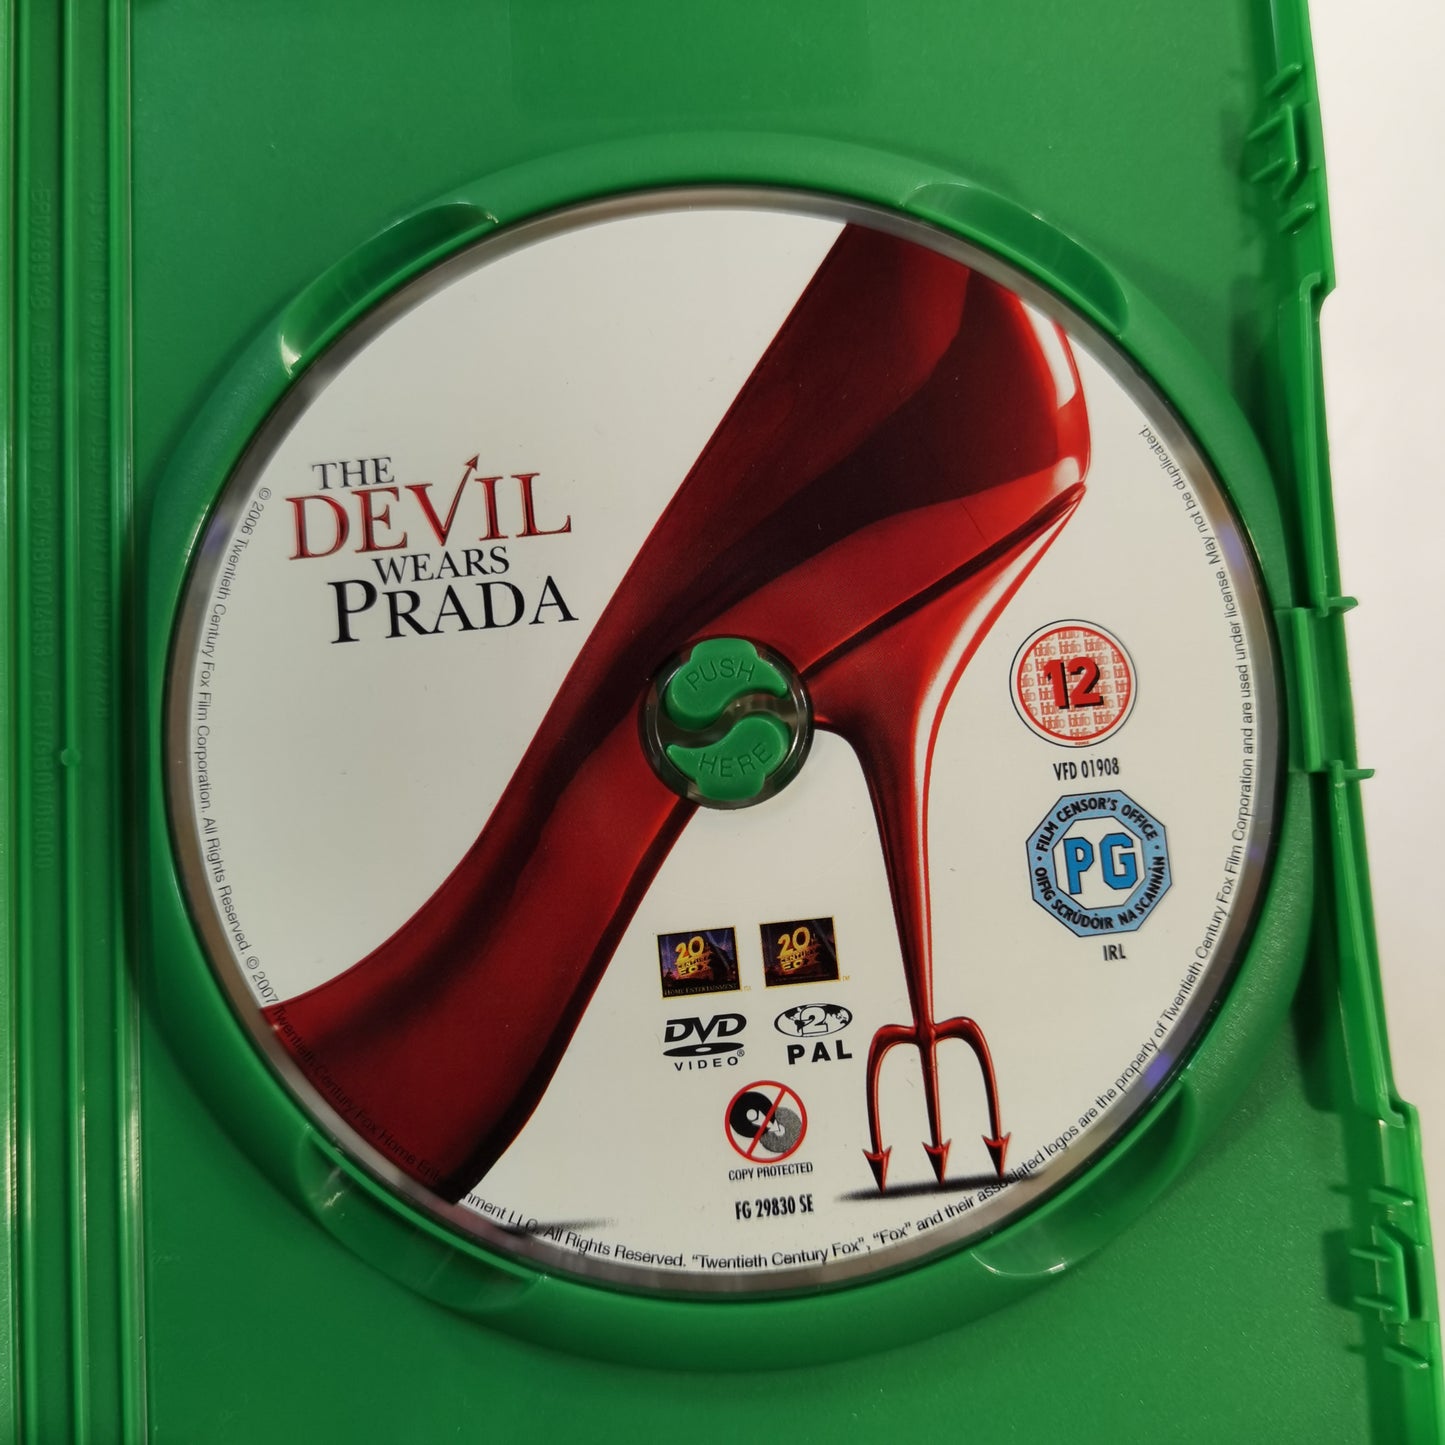 The Devil Wears Prada (2006) - DVD UK 2008